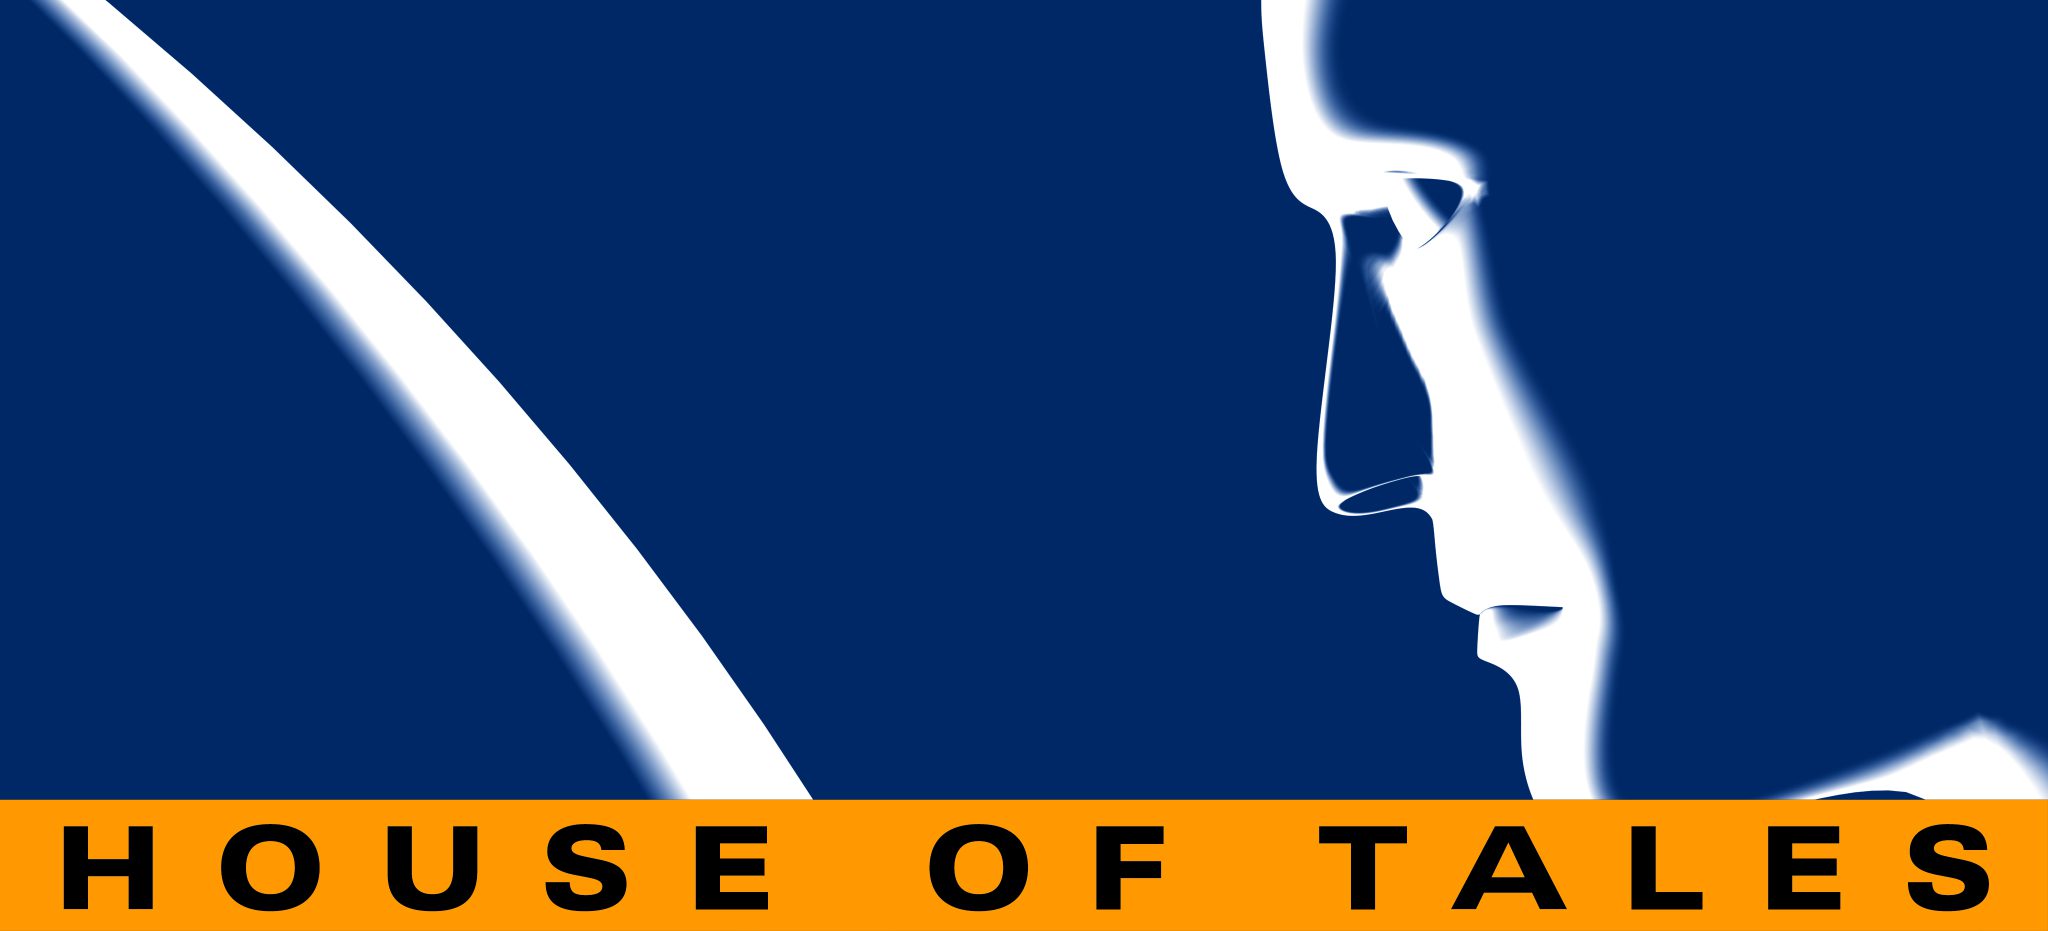 House of Tales: Ein Überblick über das Unternehmen